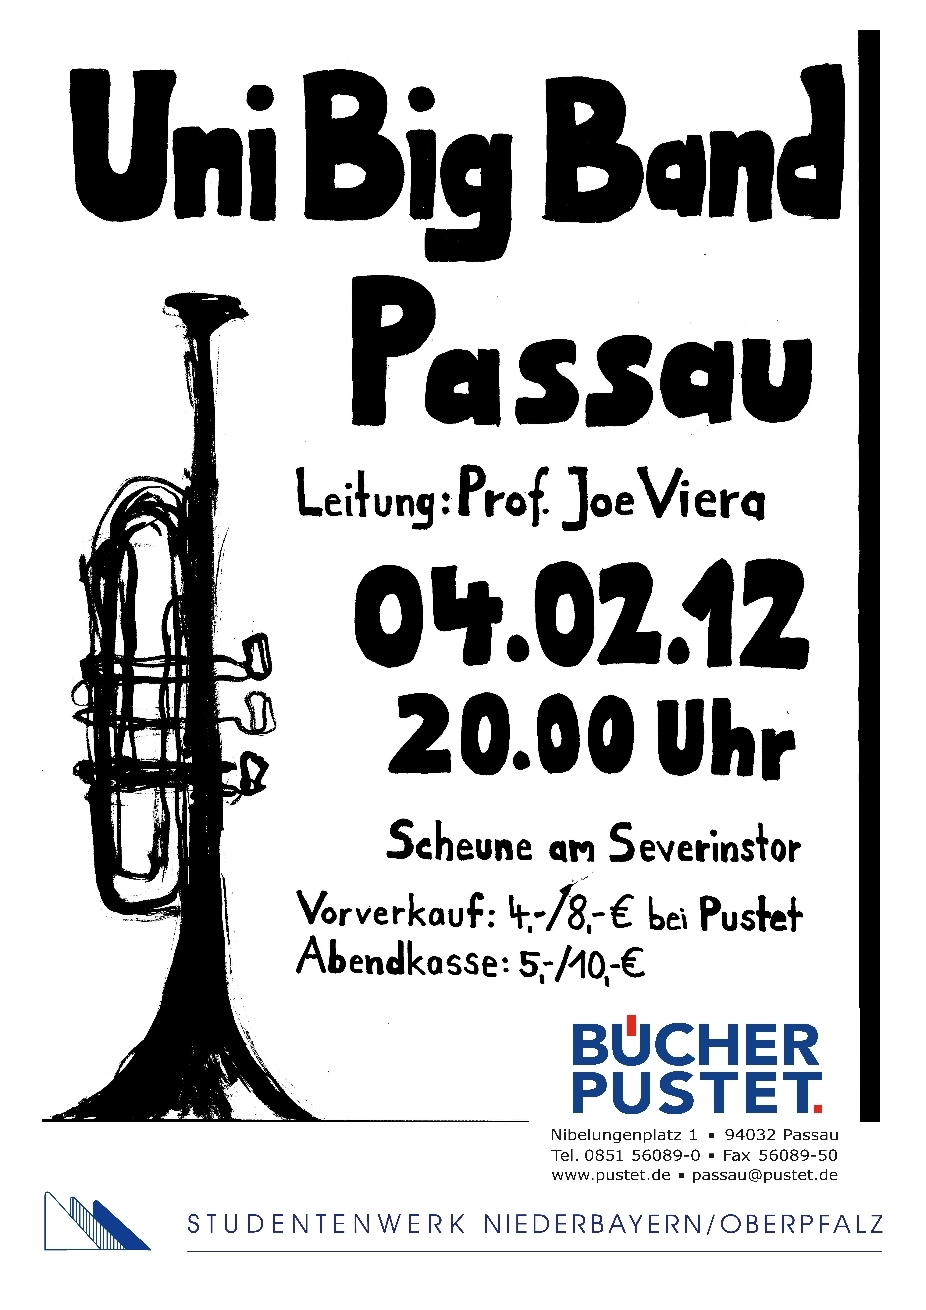 Semesterabschlusskonzert der Uni Big Band Passau